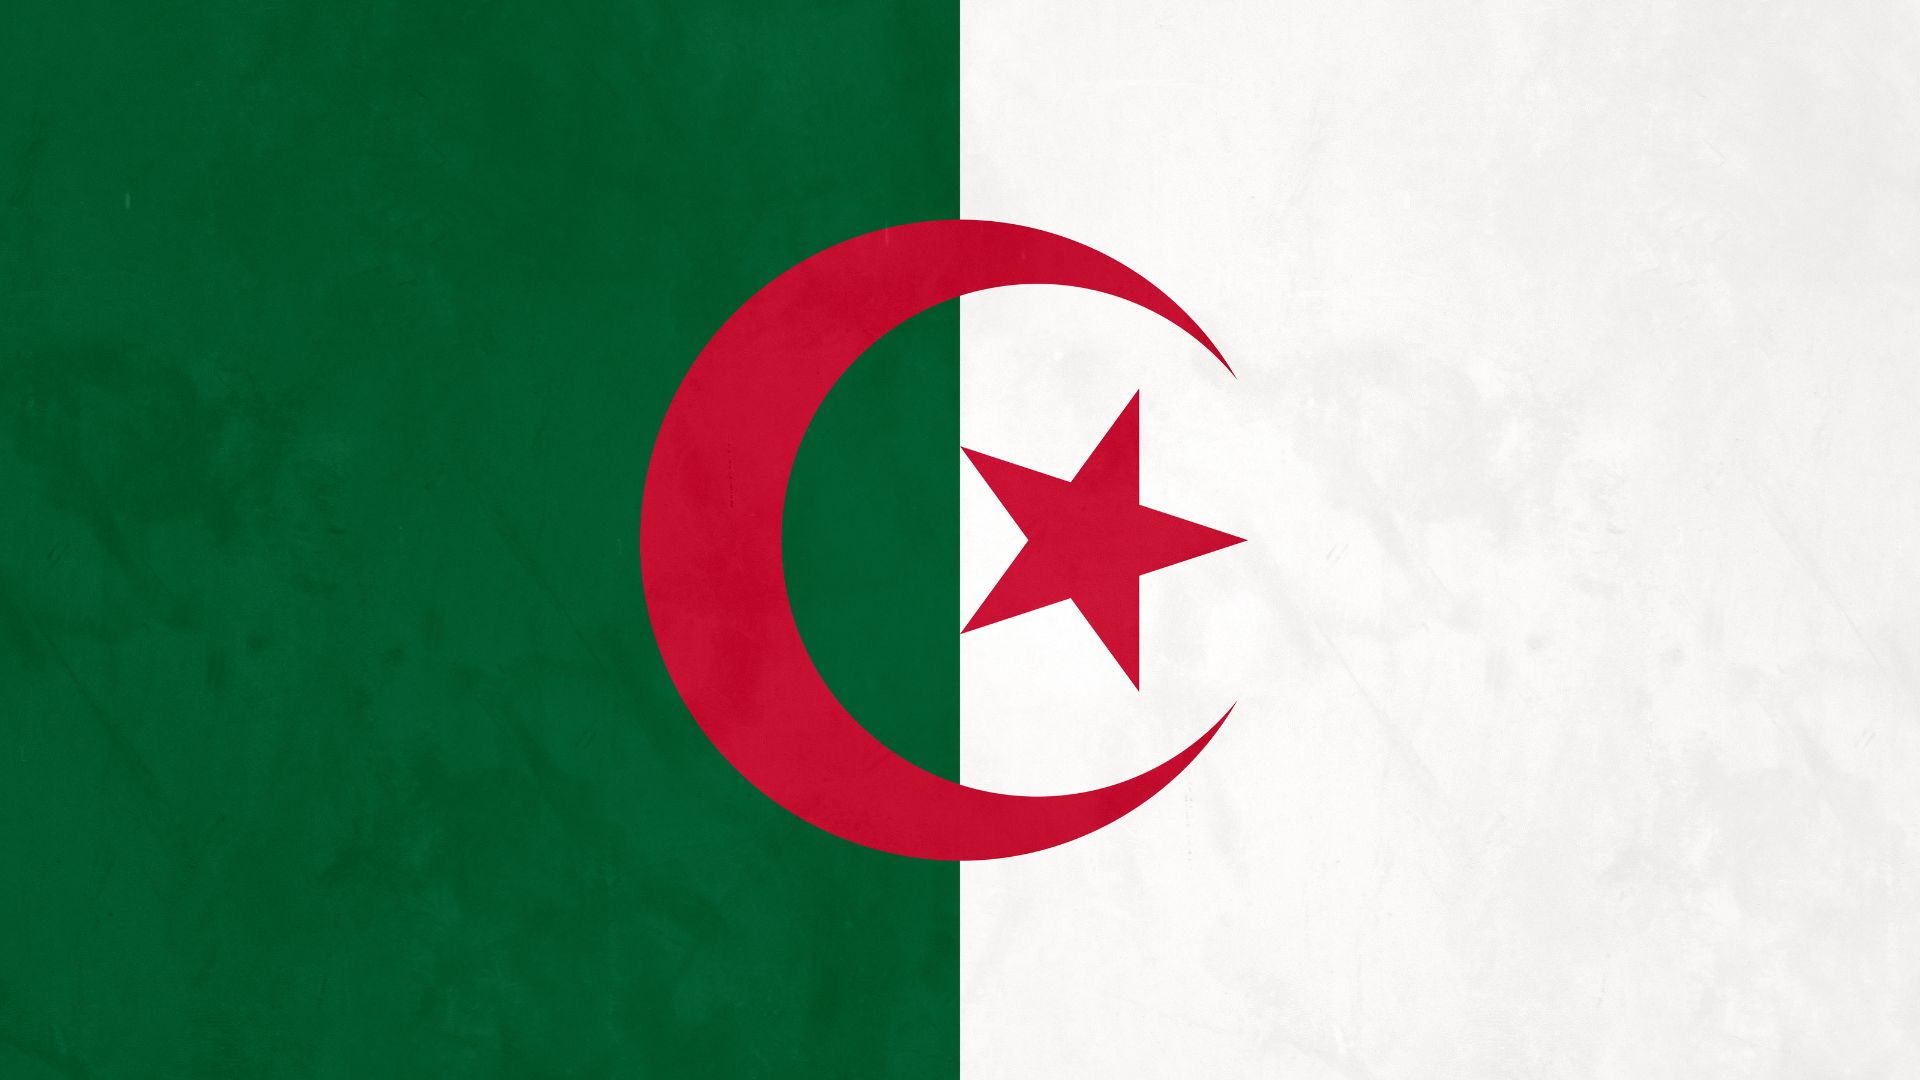 Imagem da bandeira da Argélia. A metade da bandeira é branca e a outra metade é verde e uma estrela vermelha ao centro.